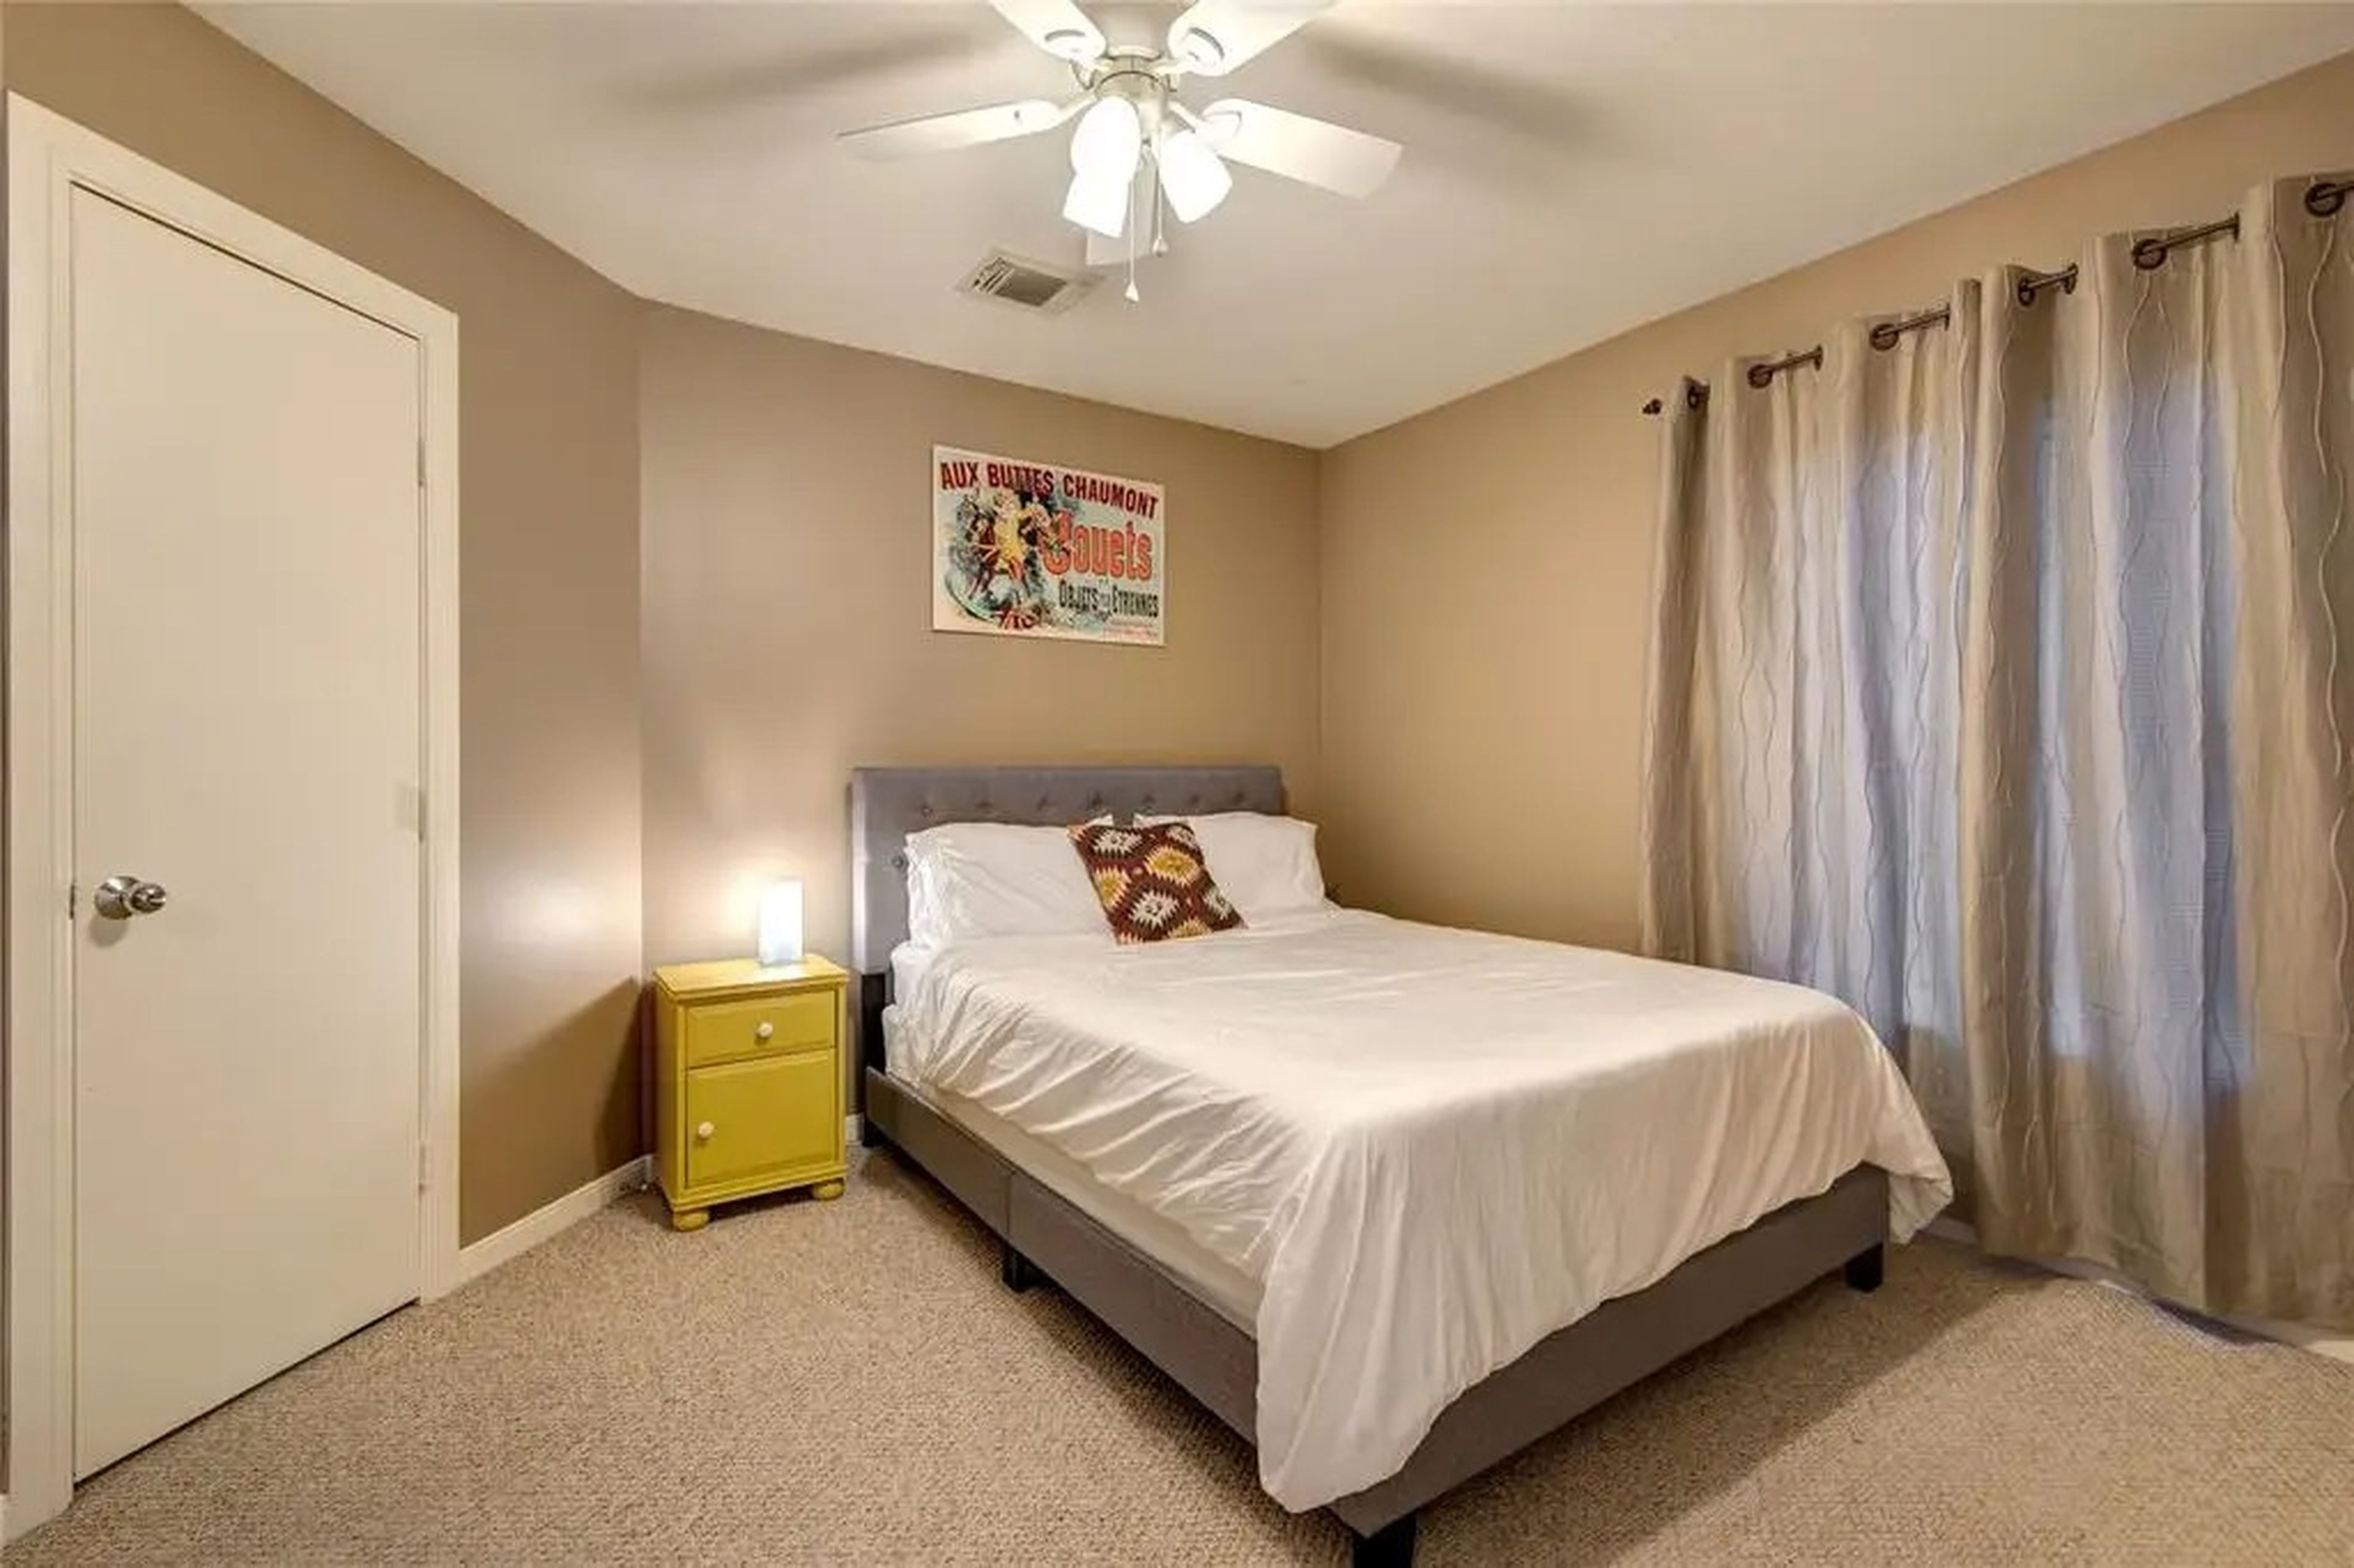 La decoración del dormitorio es más minimalista que la de otras zonas de la casa.